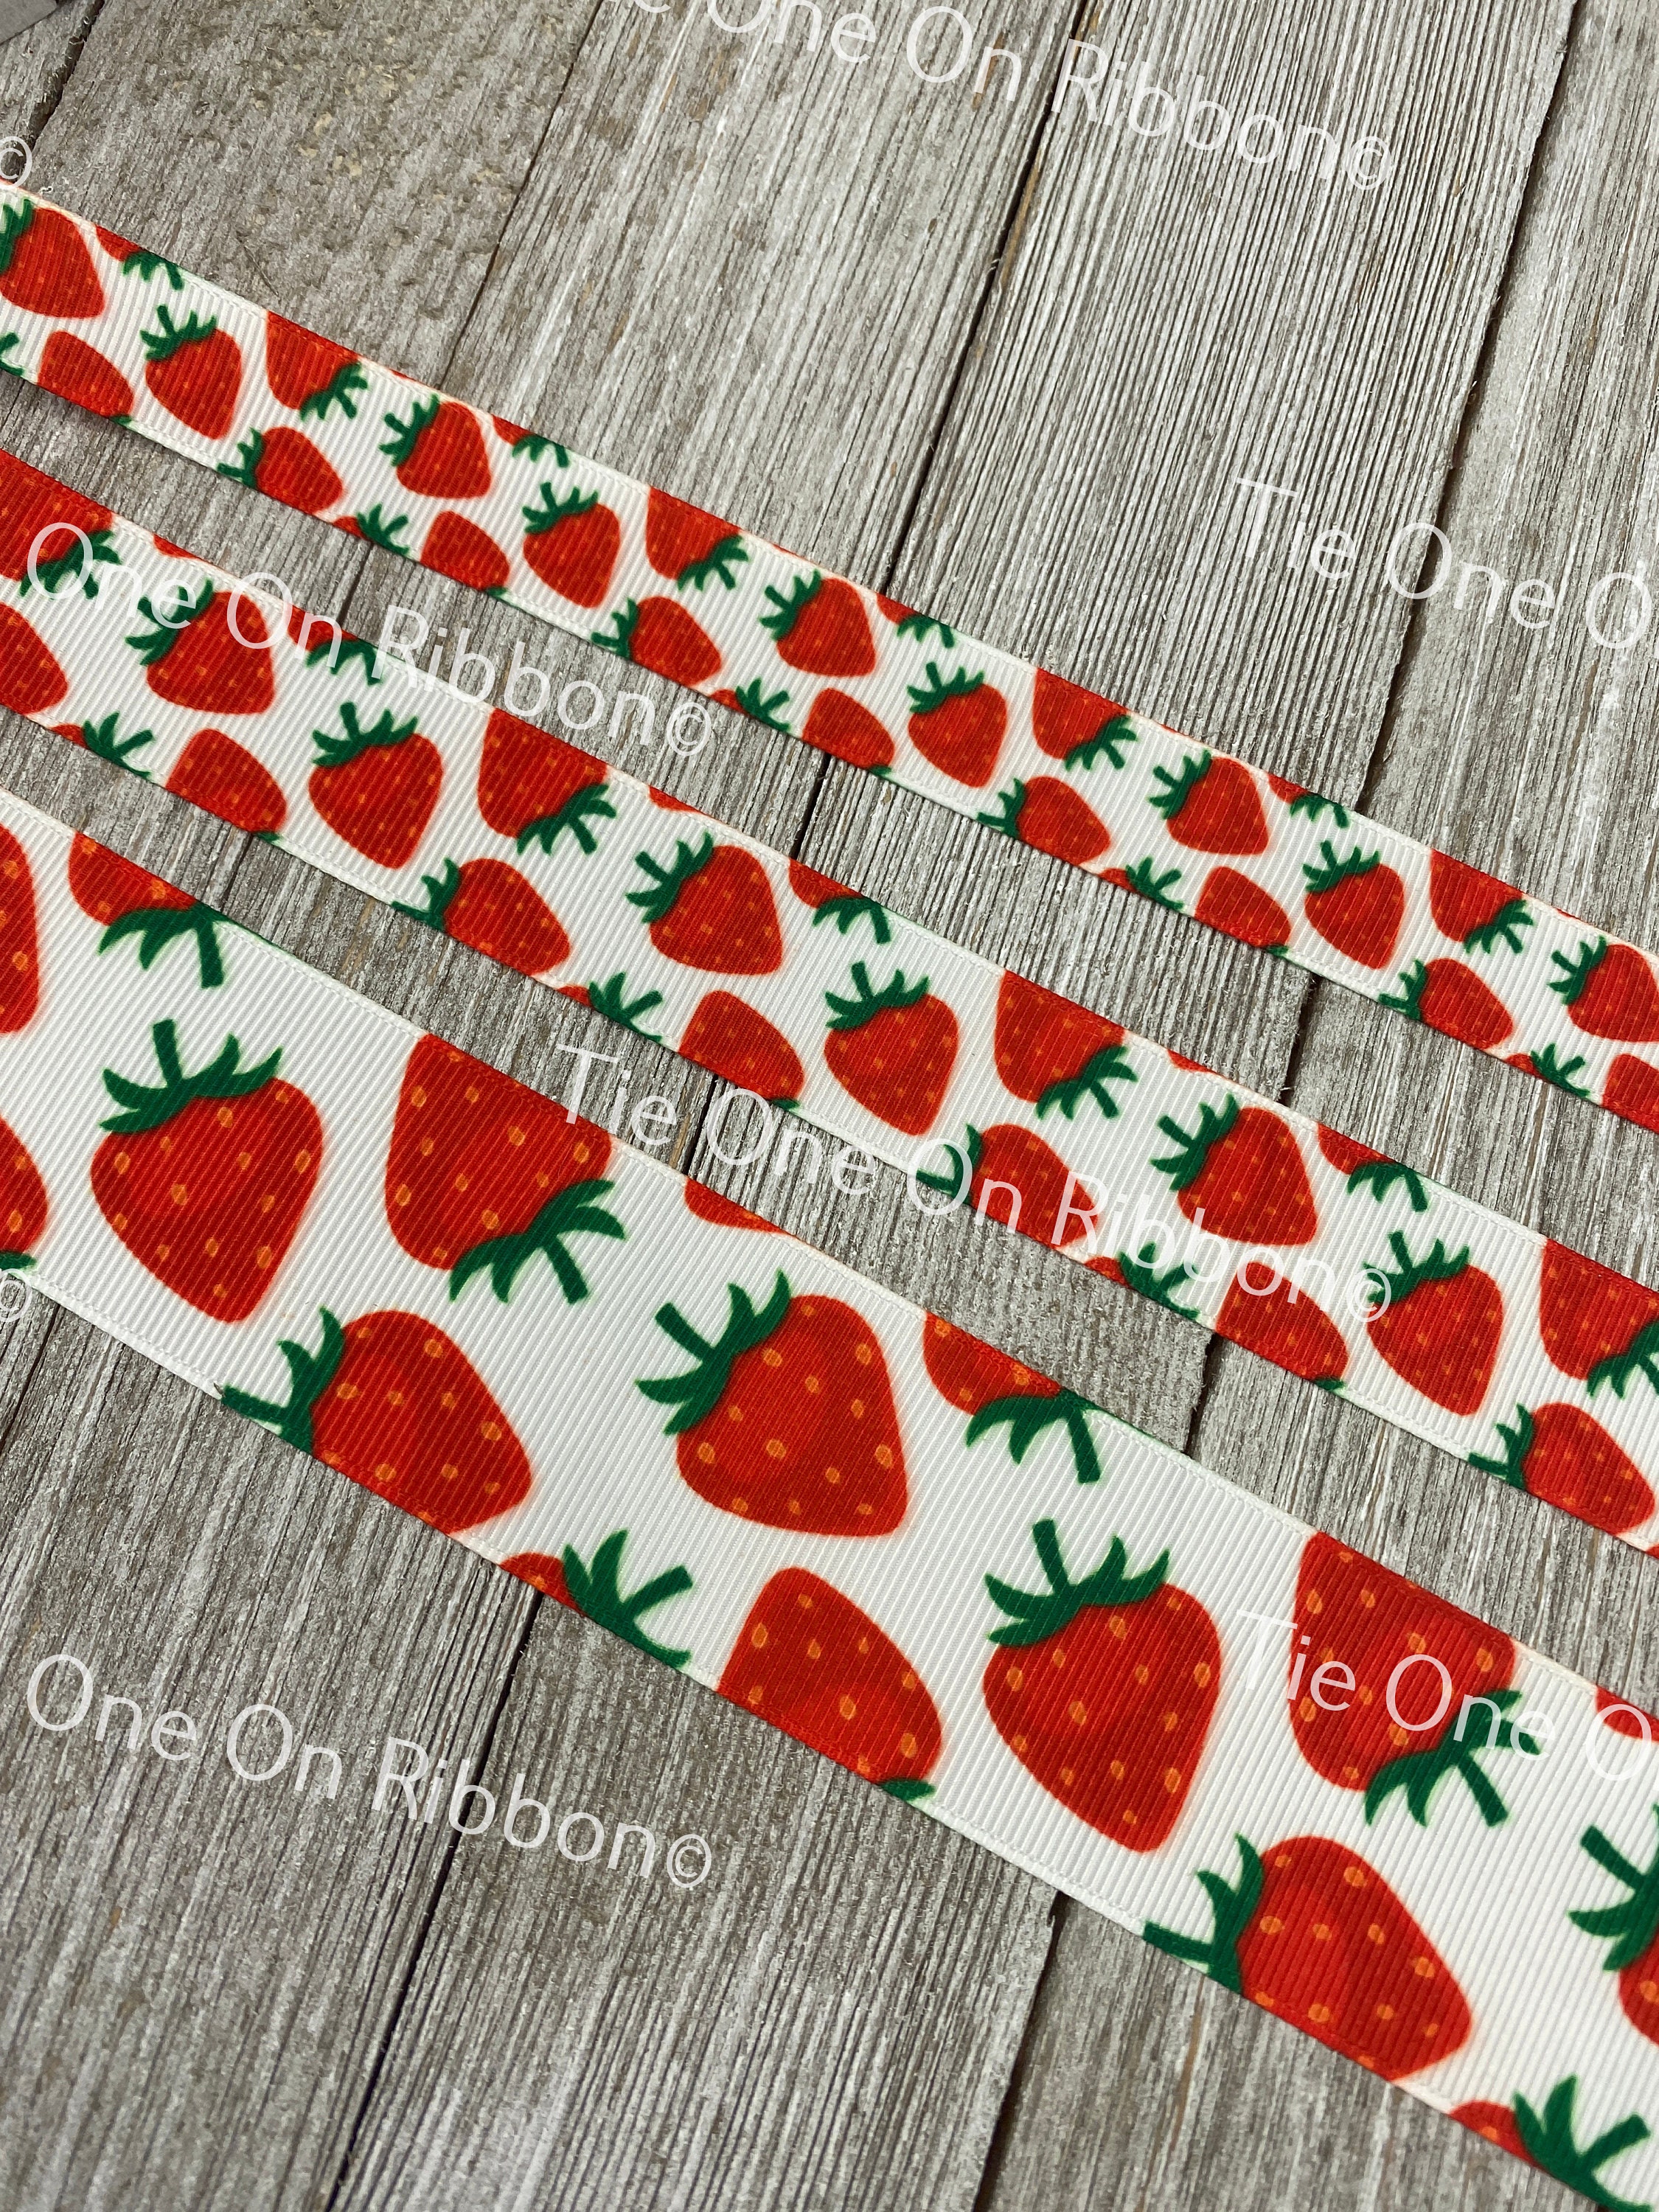 3/8 Strawberries Grosgrain Printed Ribbon